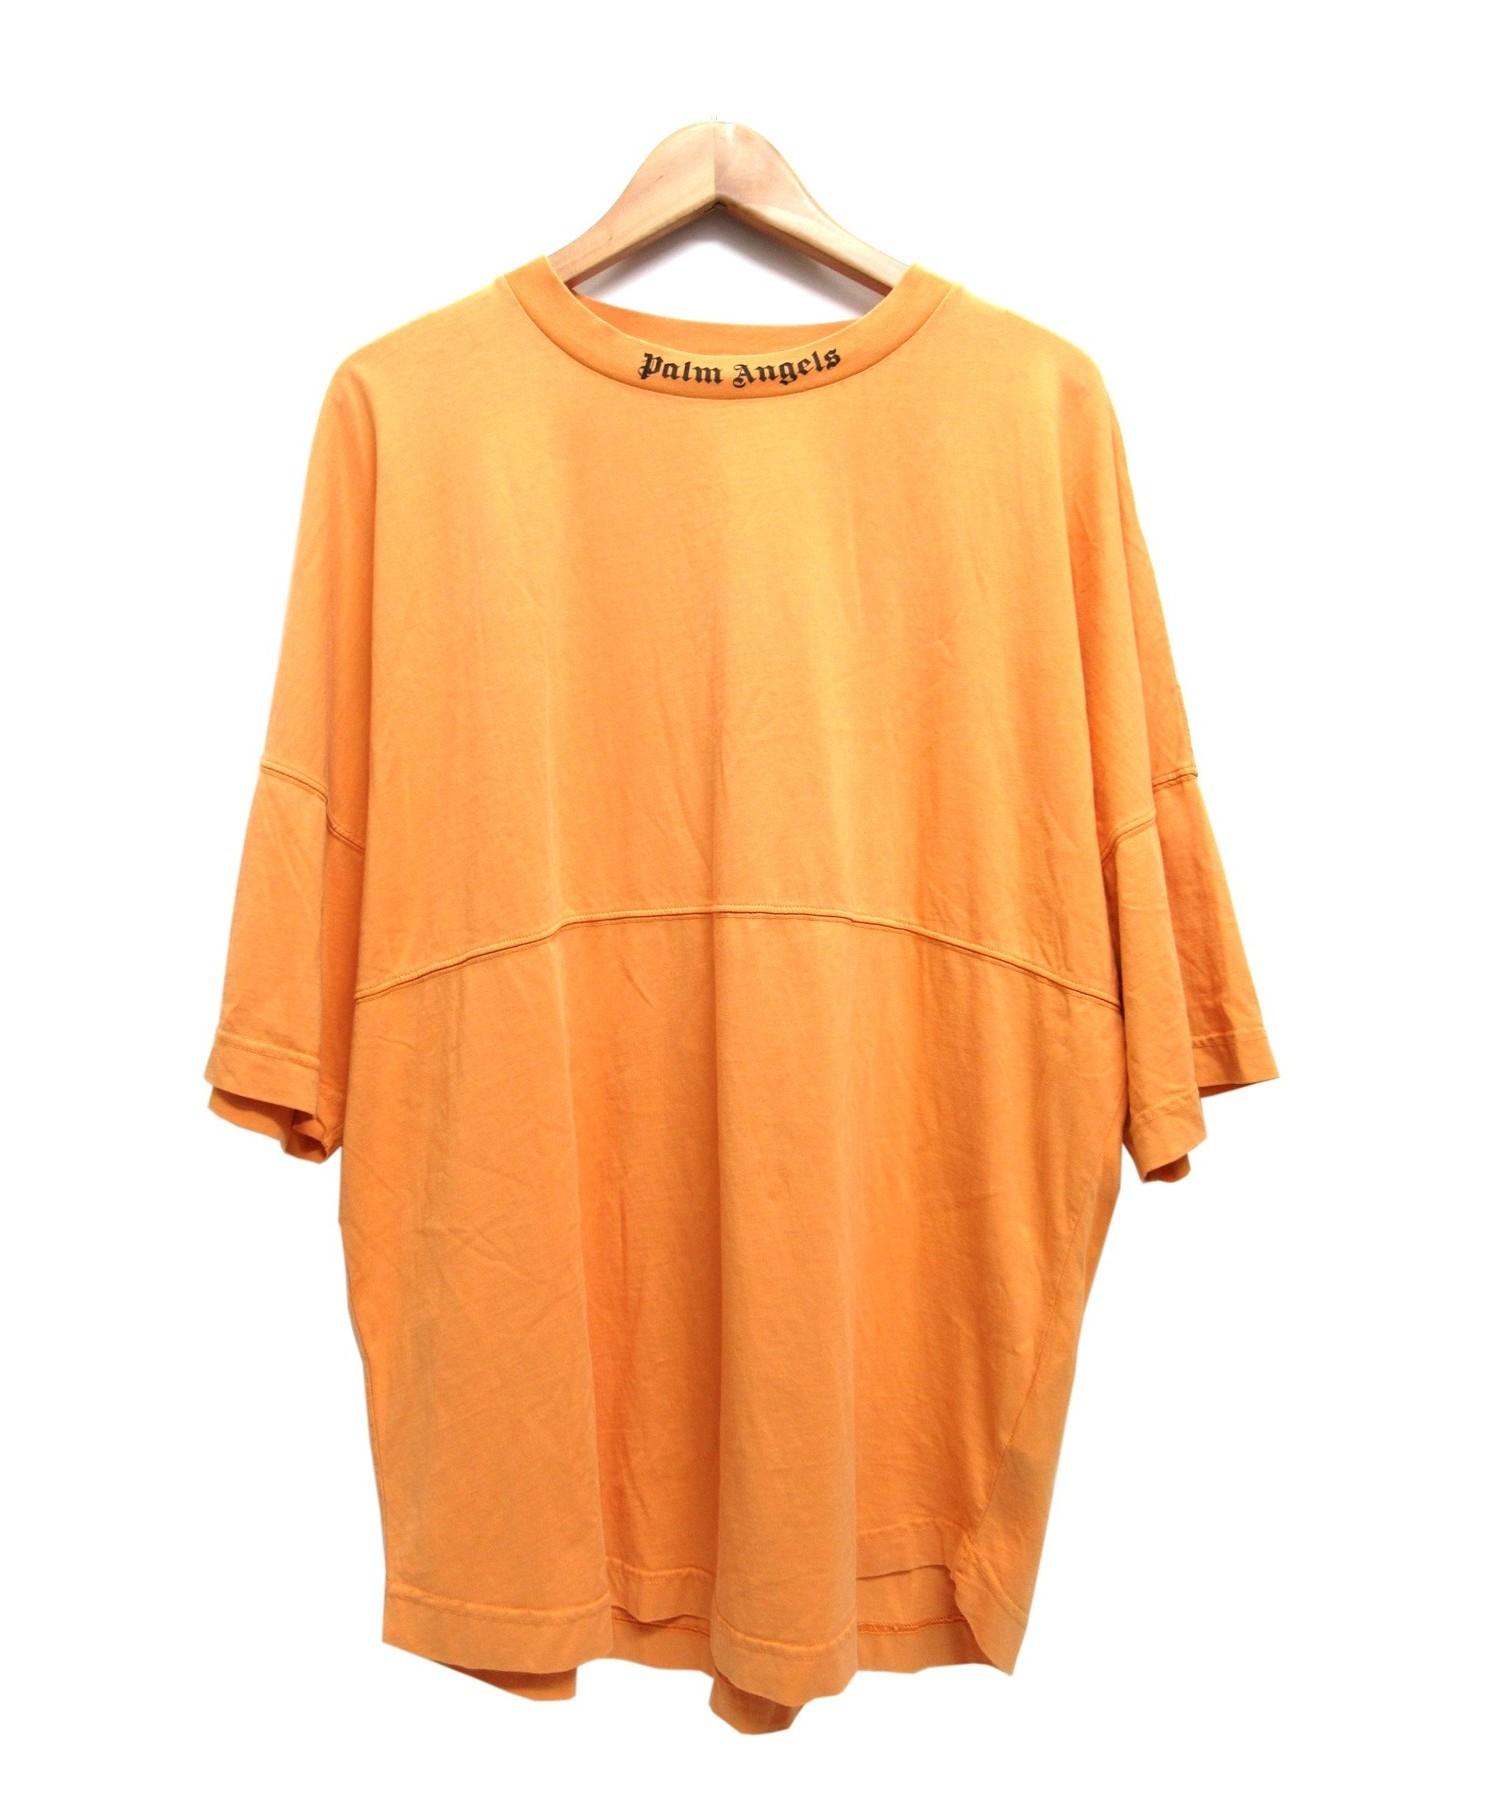 Palm Angels (パーム・エンジェルス) LOGO OVER TEE半袖カットソー オレンジ サイズ:S